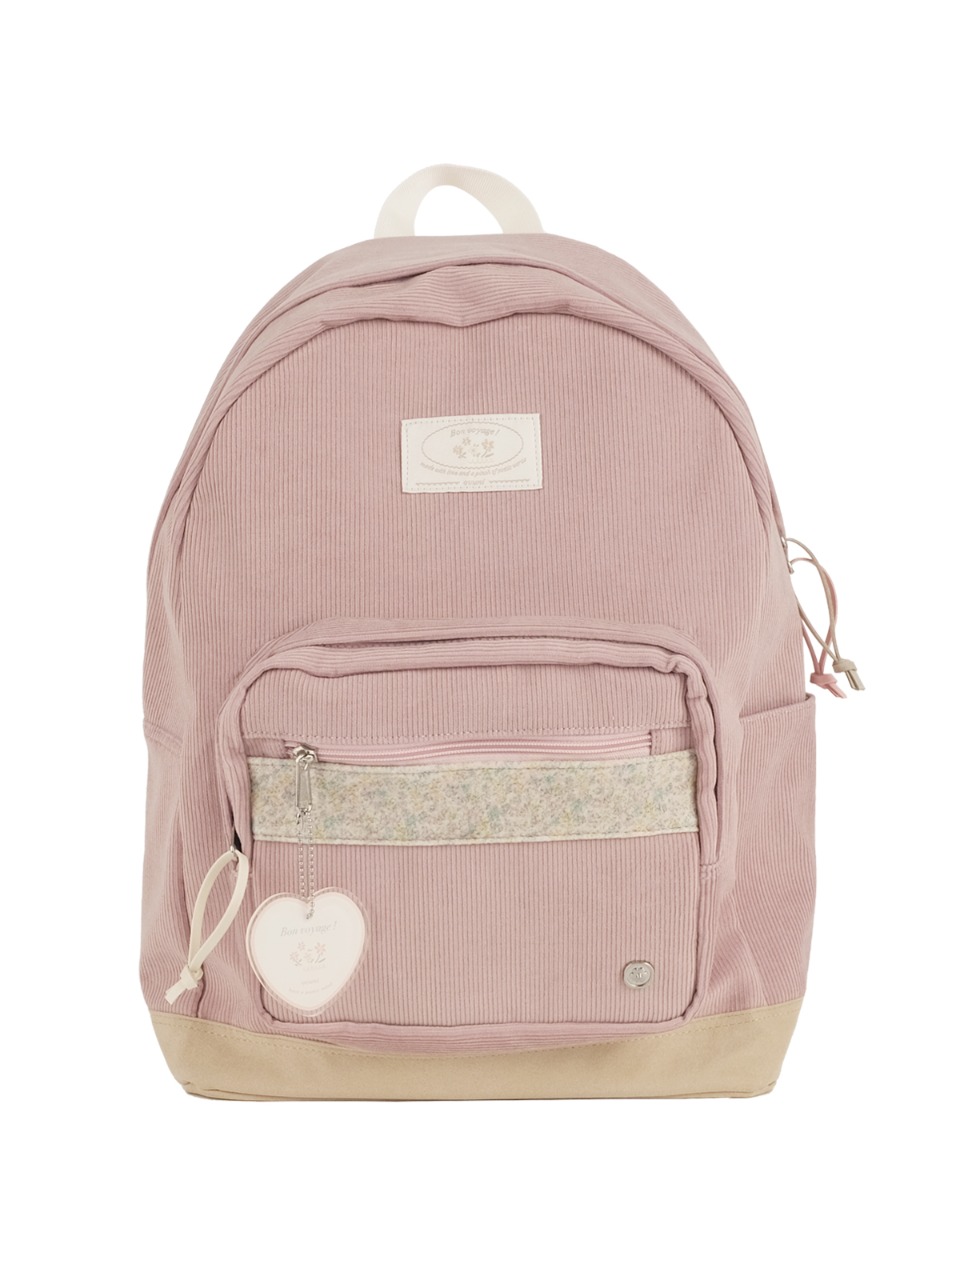 Bon voyage backpack - mauve pink - ovuni